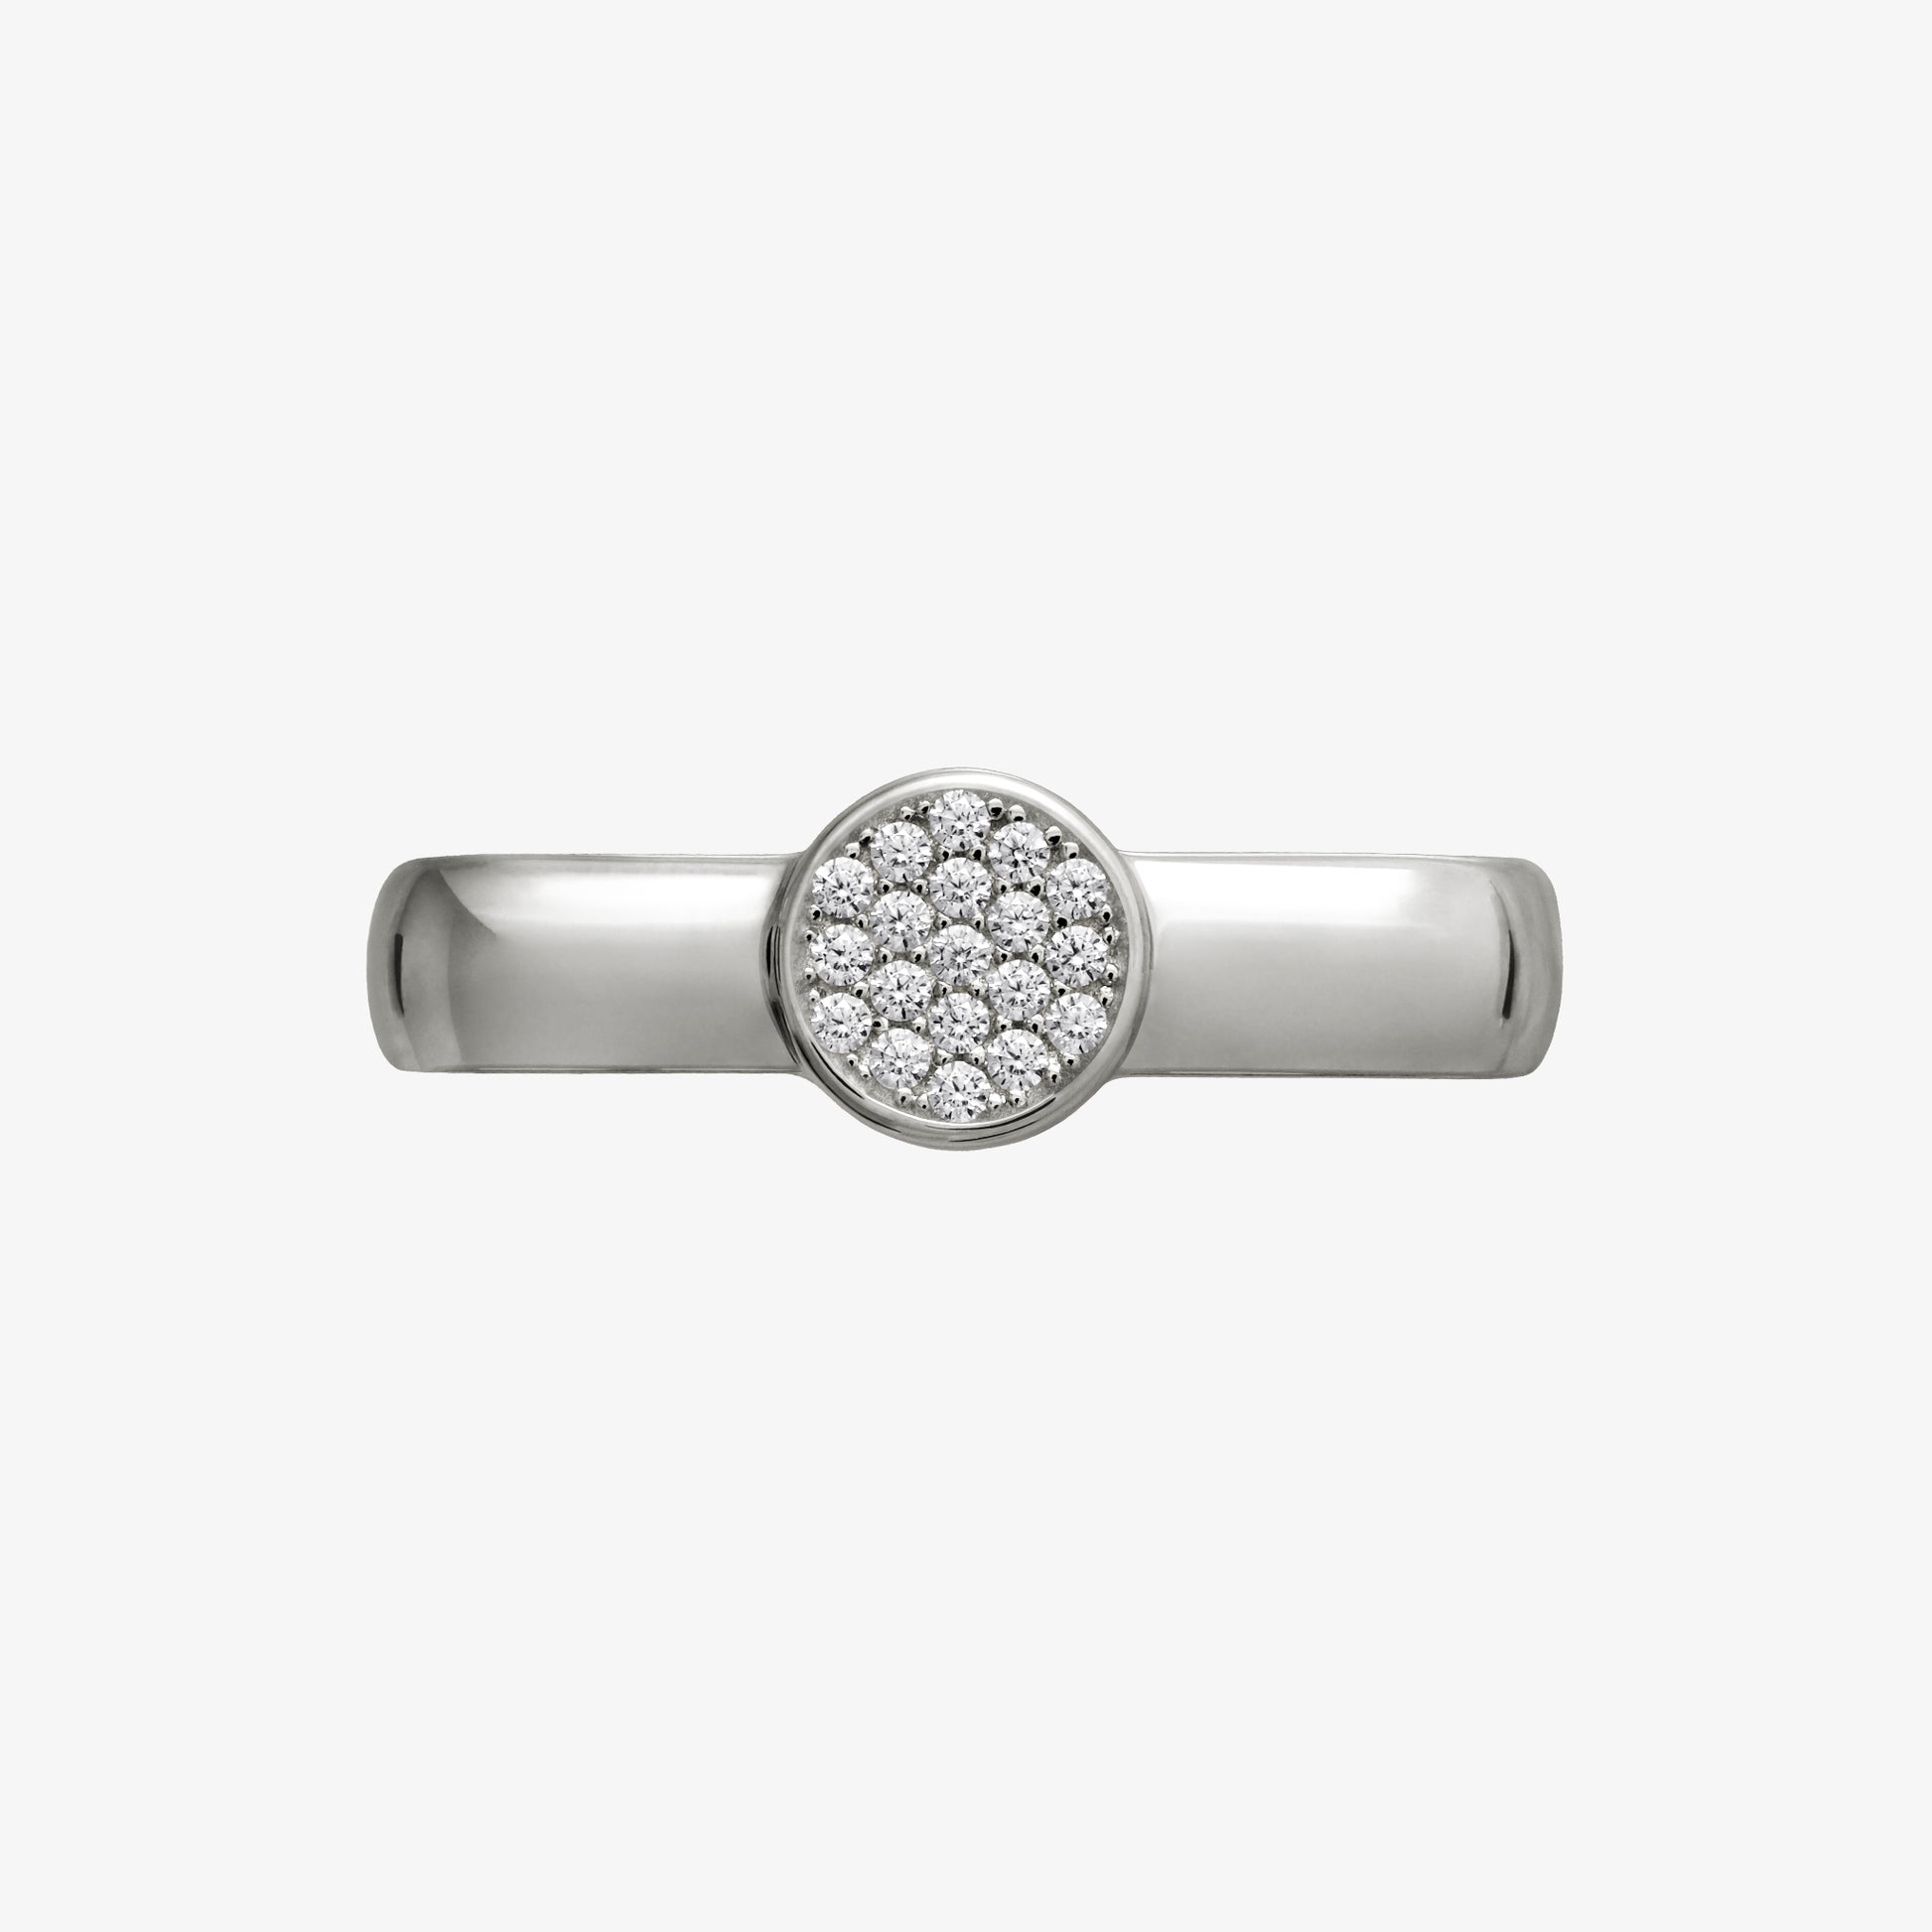  Pamoro® Loop für Apple Watch Sportbänder -  Schmuck Charm in echt Silber  rhodiniert - 19 weiße Cubic Zirkonia